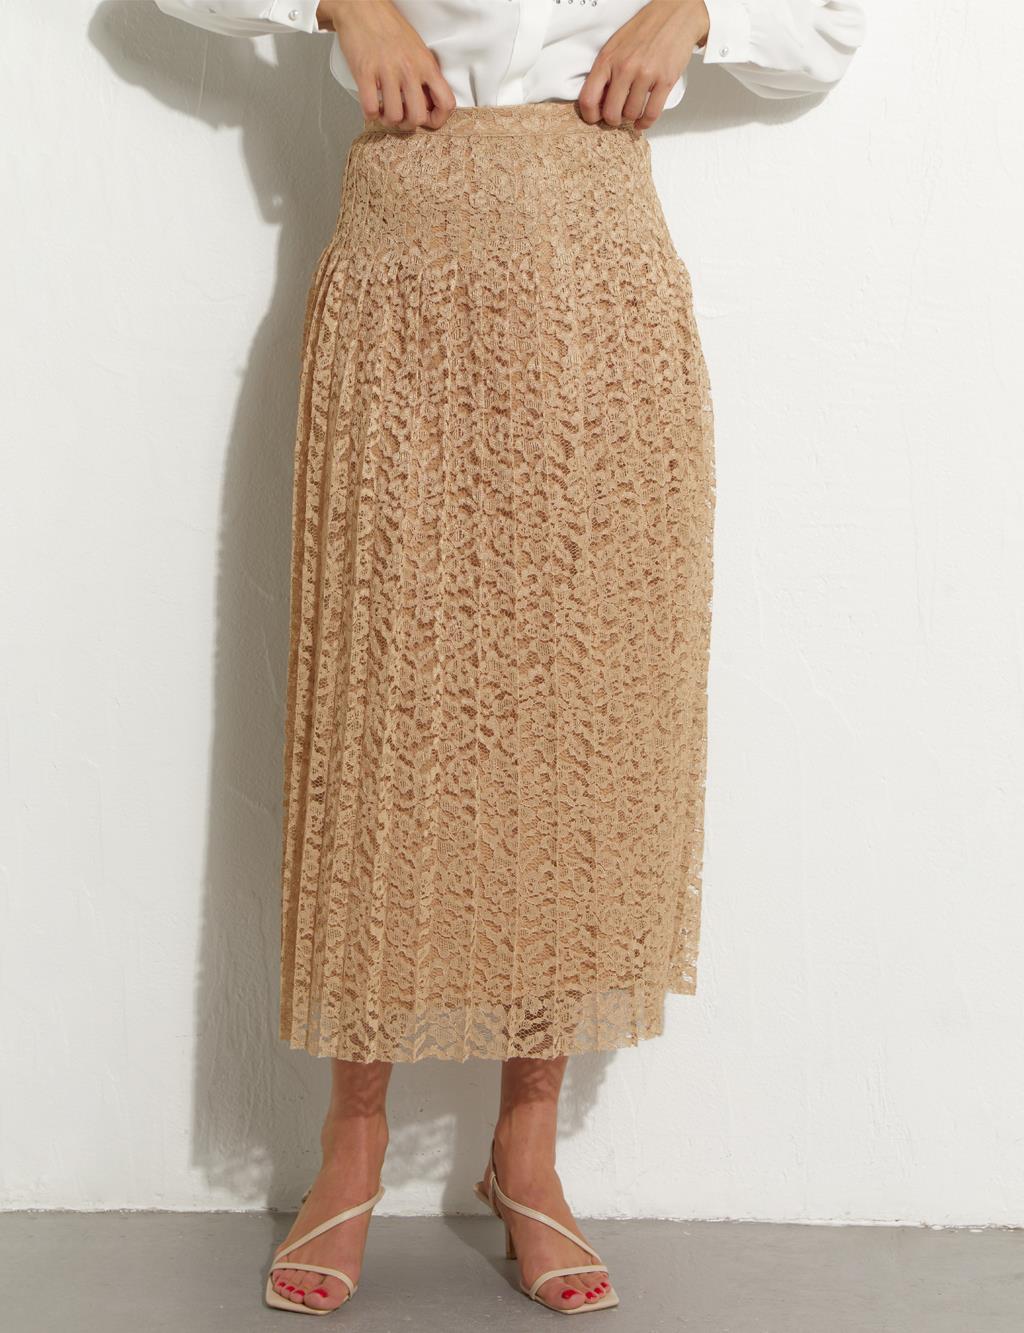 Плиссированная кружевная юбка песочно-бежевого цвета Kayra плиссированная юбка на пуговицах цвета бежевого песка kayra